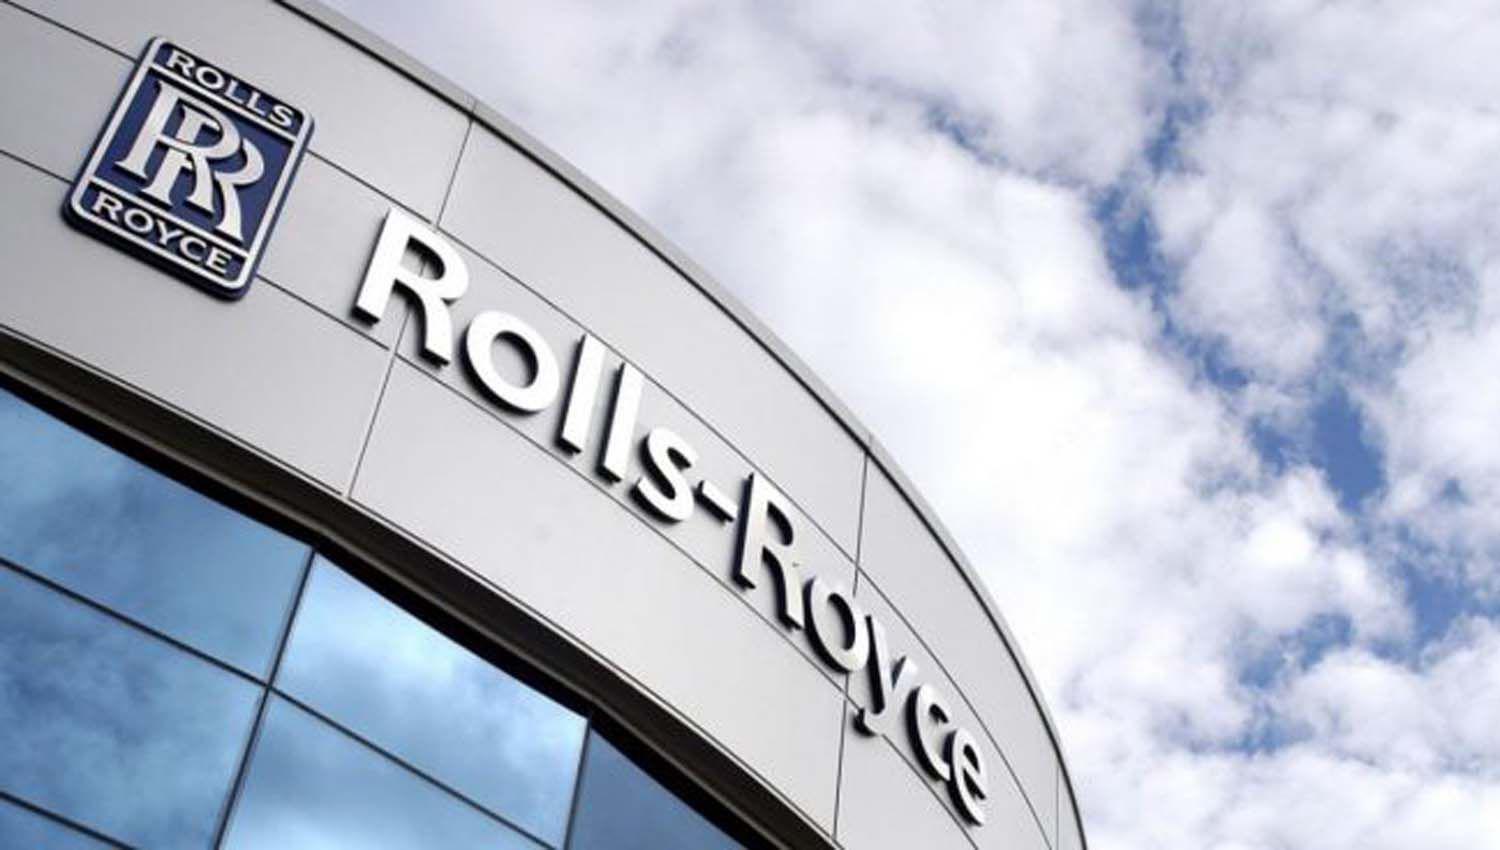 Rolls Royce despediraacute a 9000 trabajadores y estudia cerrar plantas